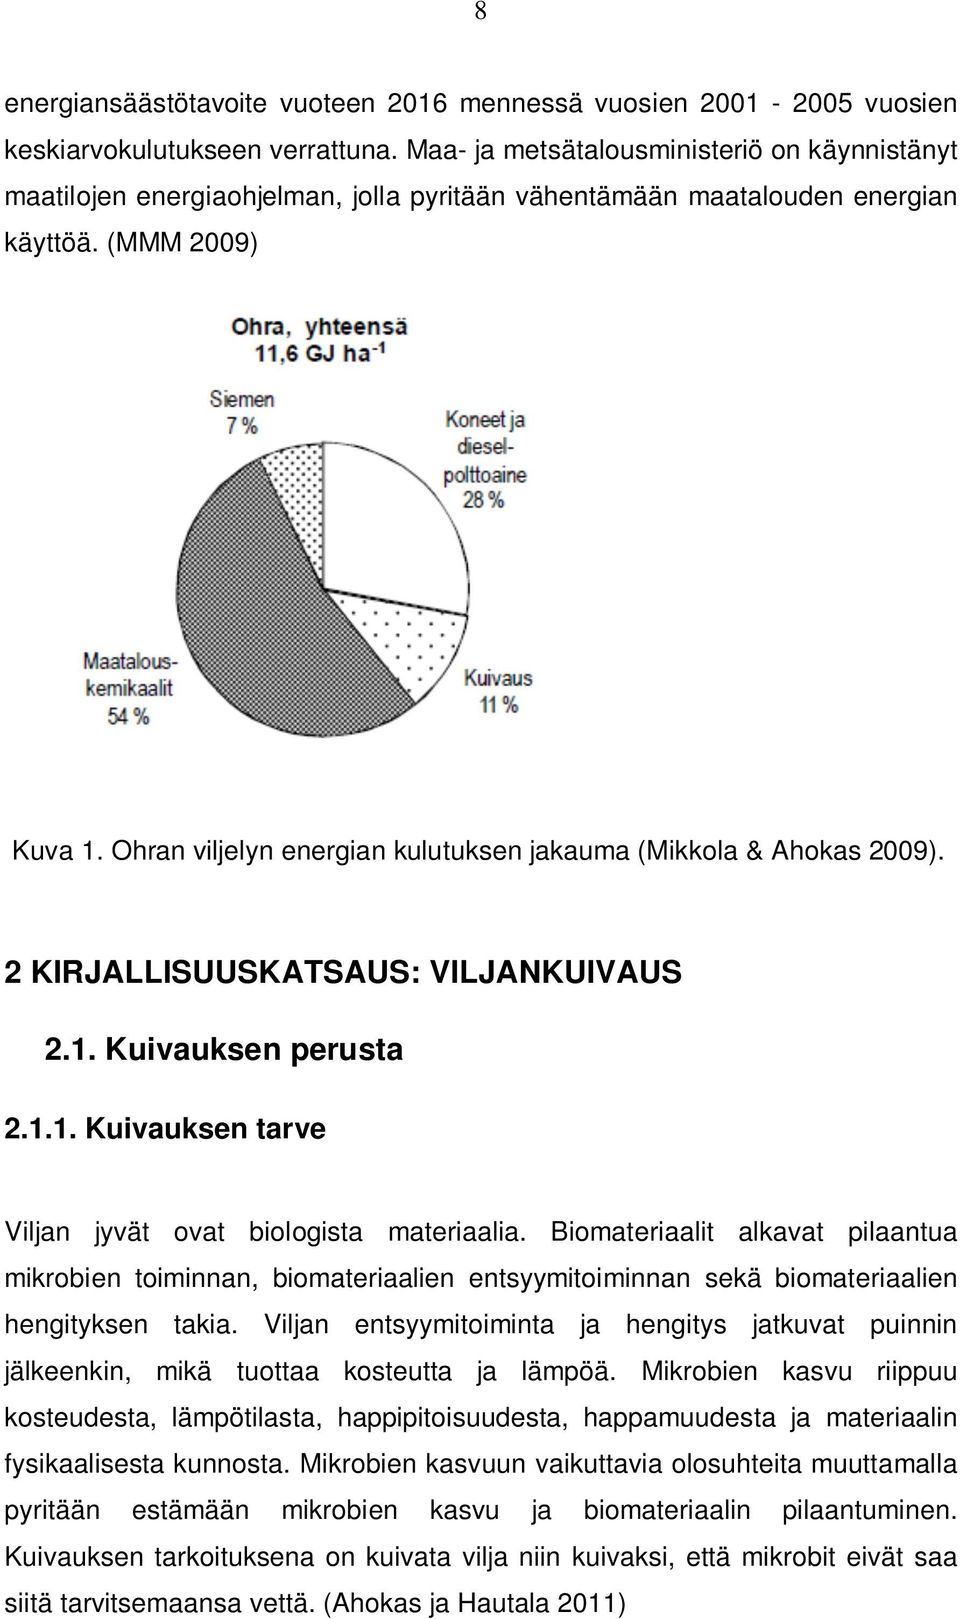 Ohran viljelyn energian kulutuksen jakauma (Mikkola & Ahokas 2009). 2 KIRJALLISUUSKATSAUS: VILJANKUIVAUS 2.1. Kuivauksen perusta 2.1.1. Kuivauksen tarve Viljan jyvät ovat biologista materiaalia.